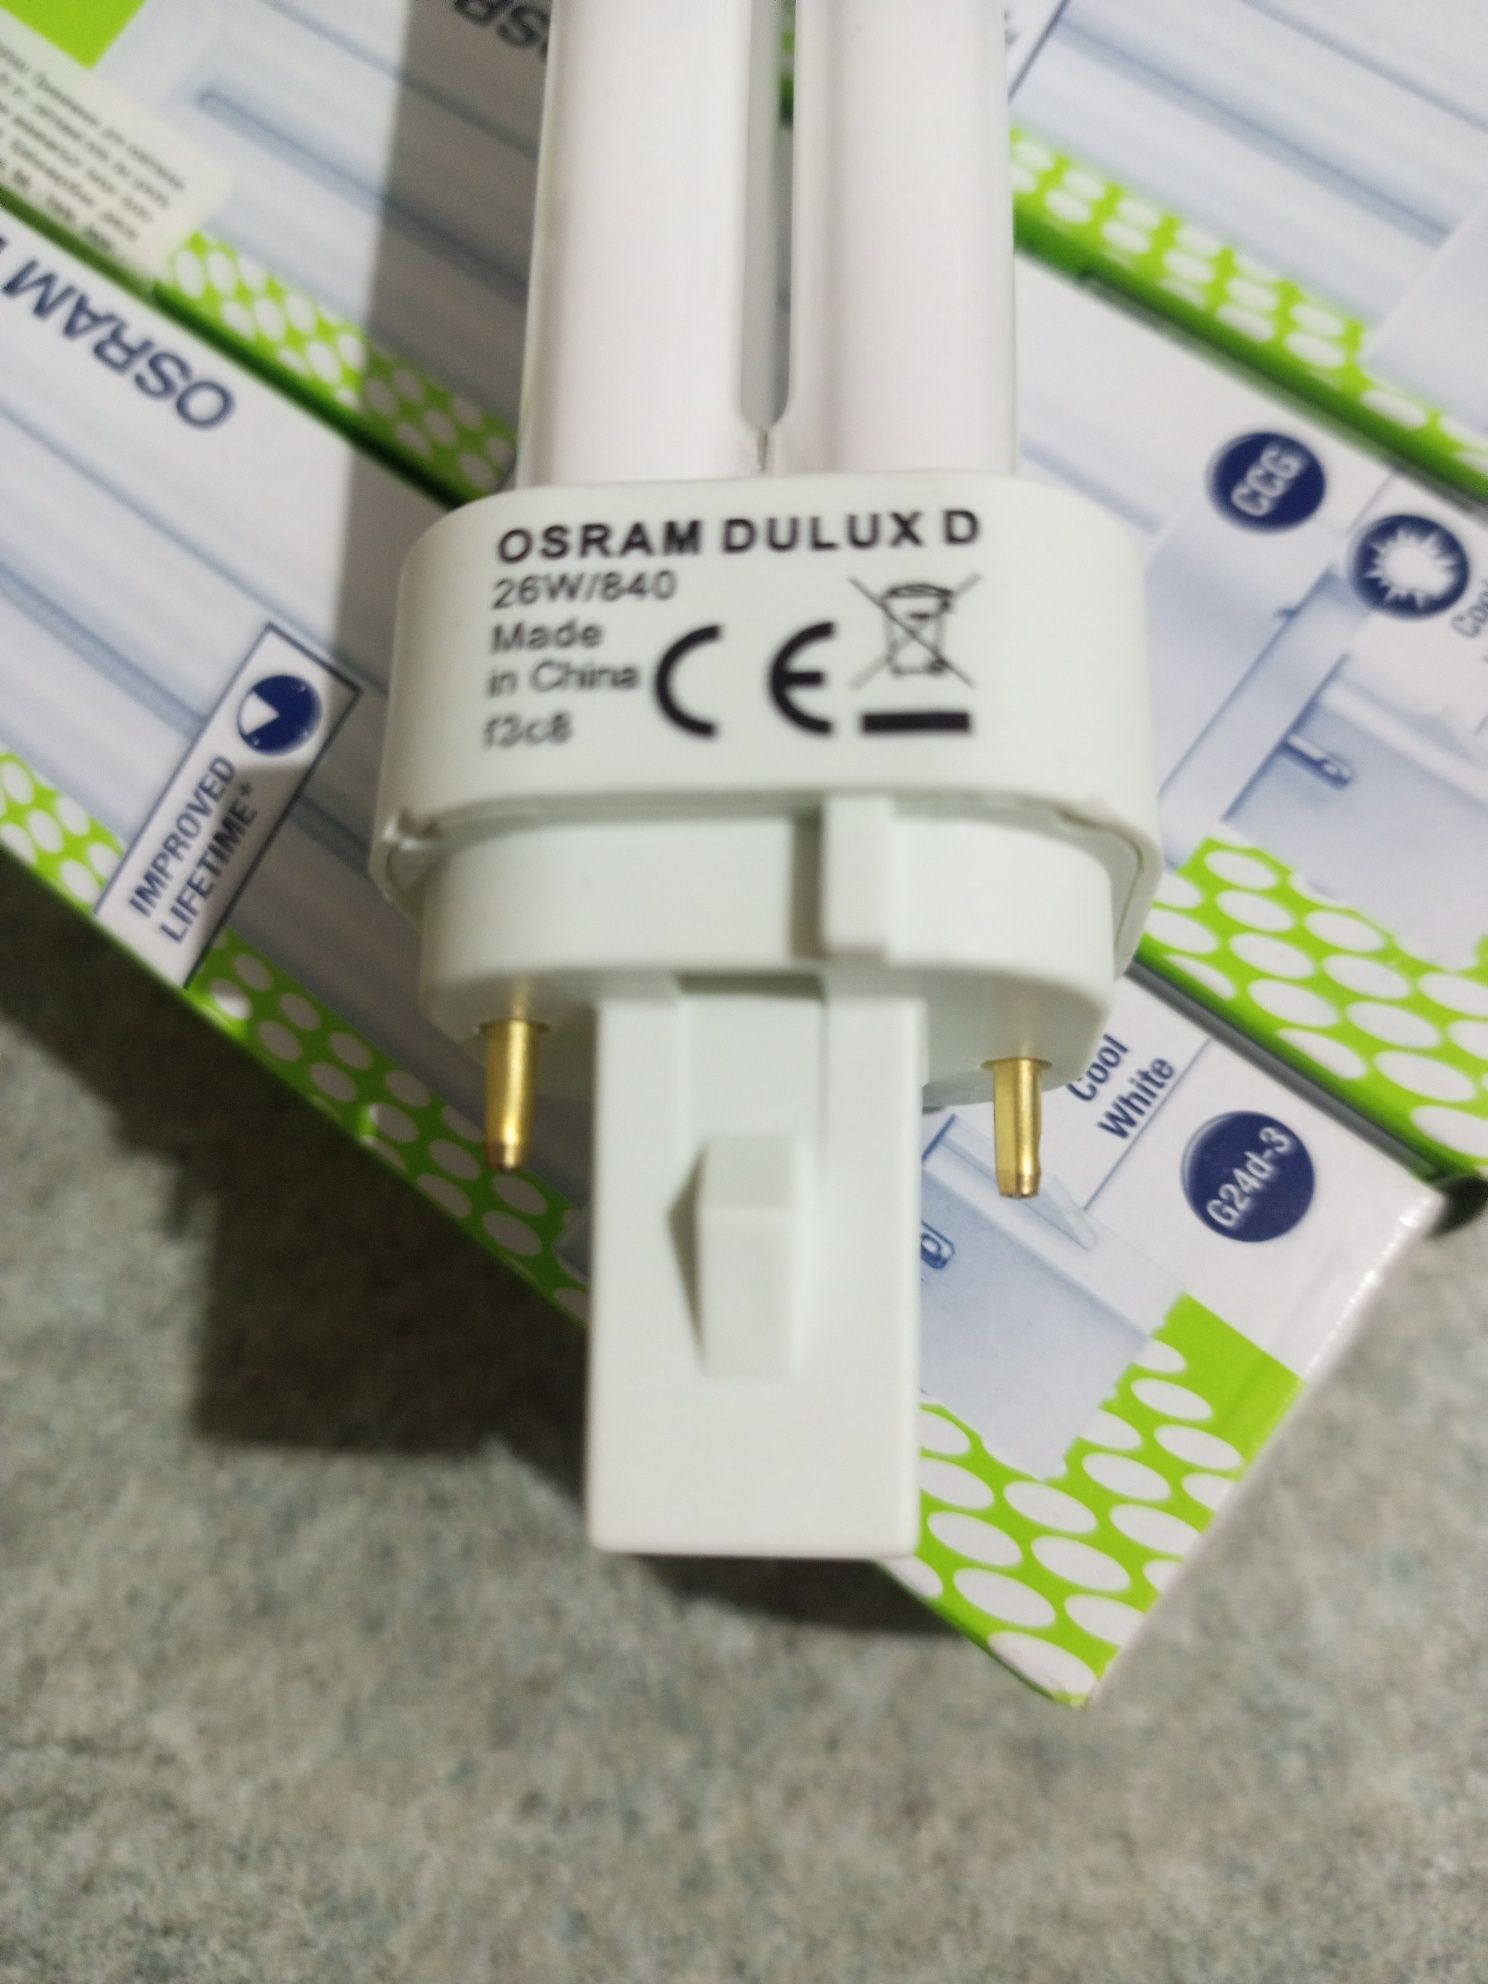 Лампа OSRAM DULUX D 26W/840